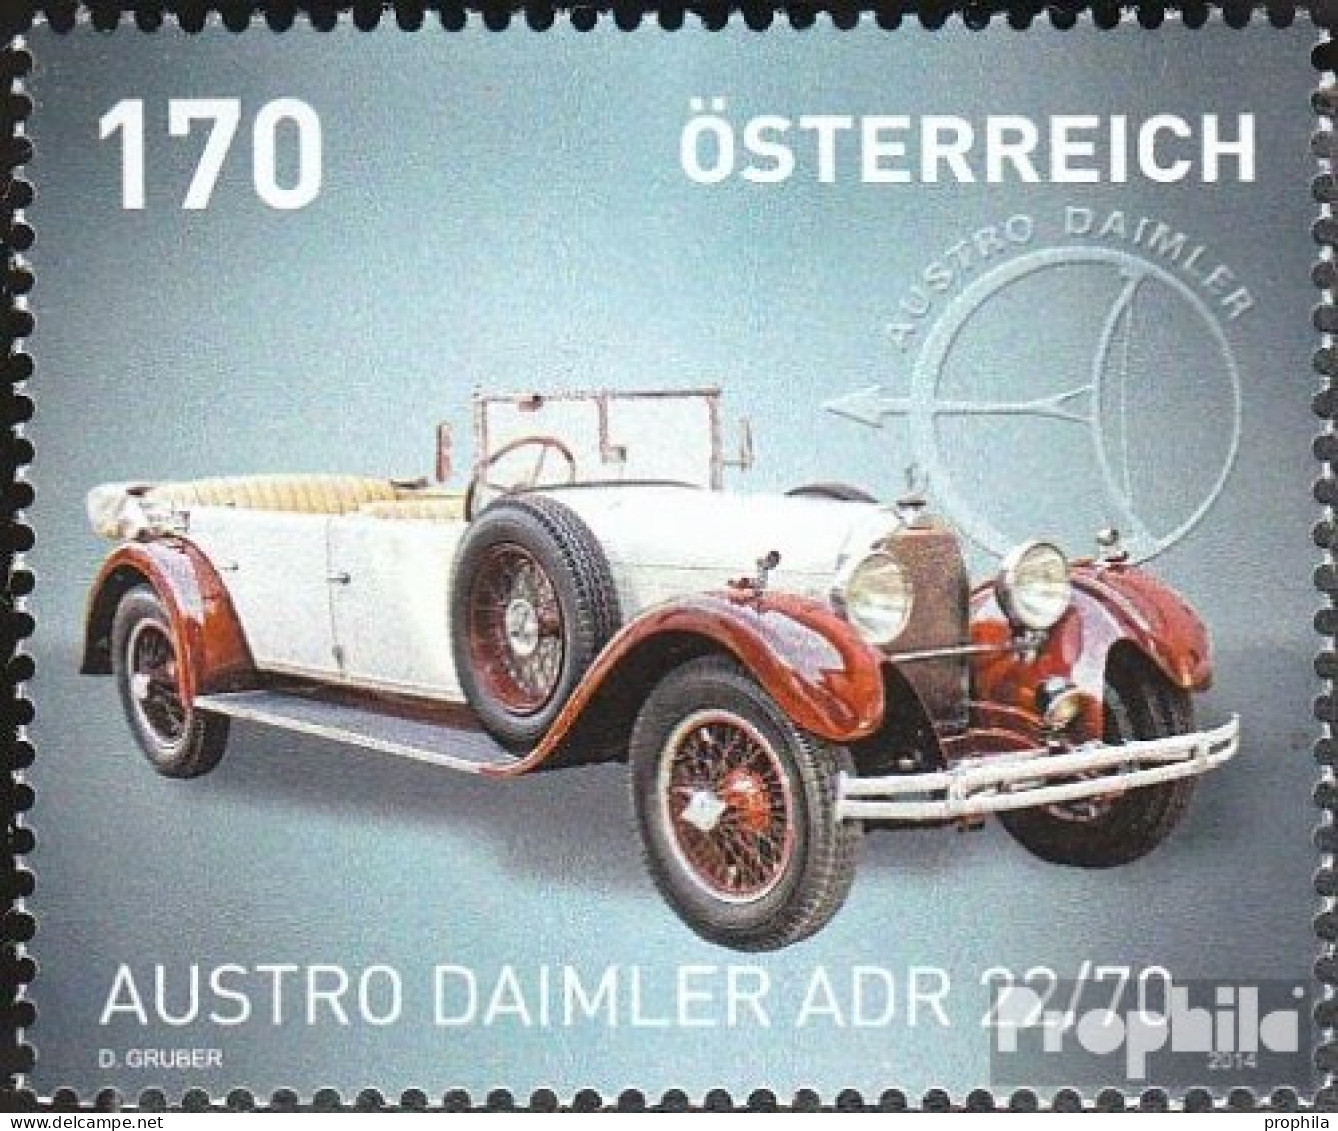 Österreich 3116 (kompl.Ausg.) Postfrisch 2014 Auto - Ungebraucht